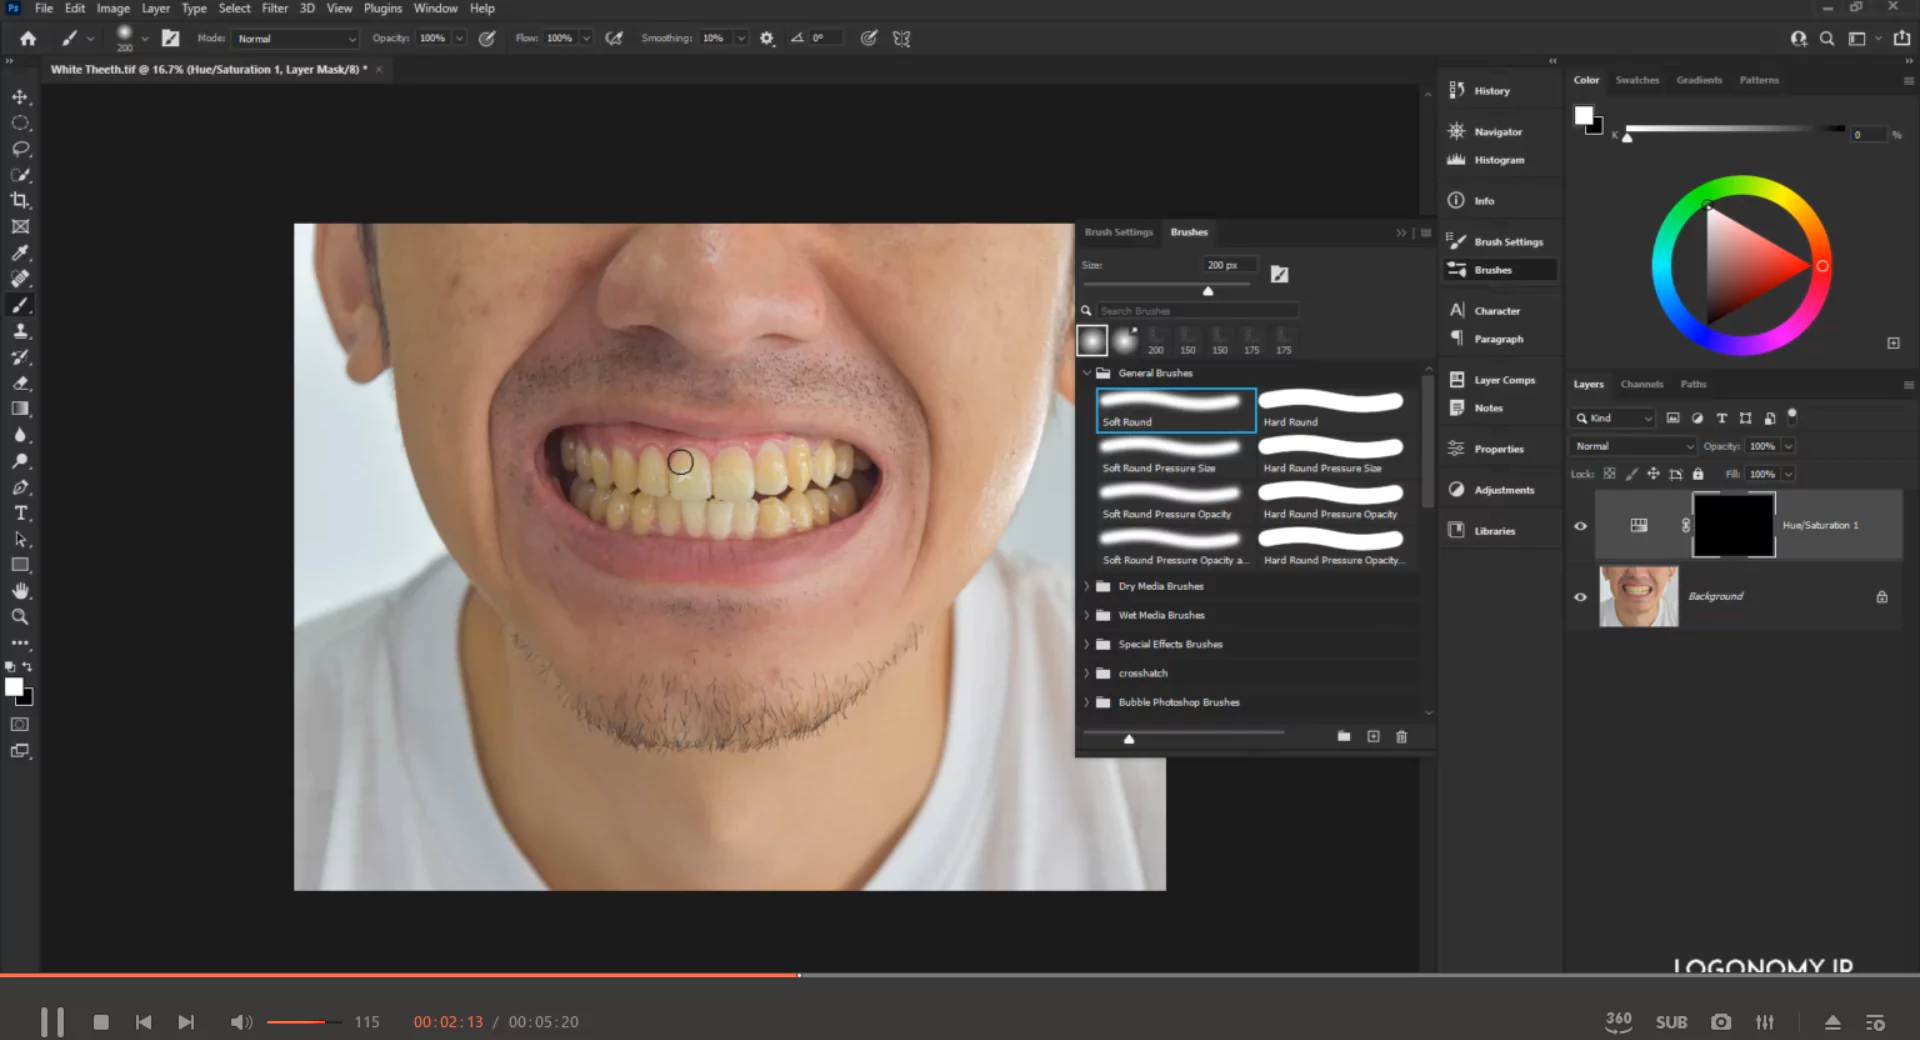 پروژه سفید کردن رنگ زرد دندان ها در نرم افزار فتوشاپ (Photoshop)